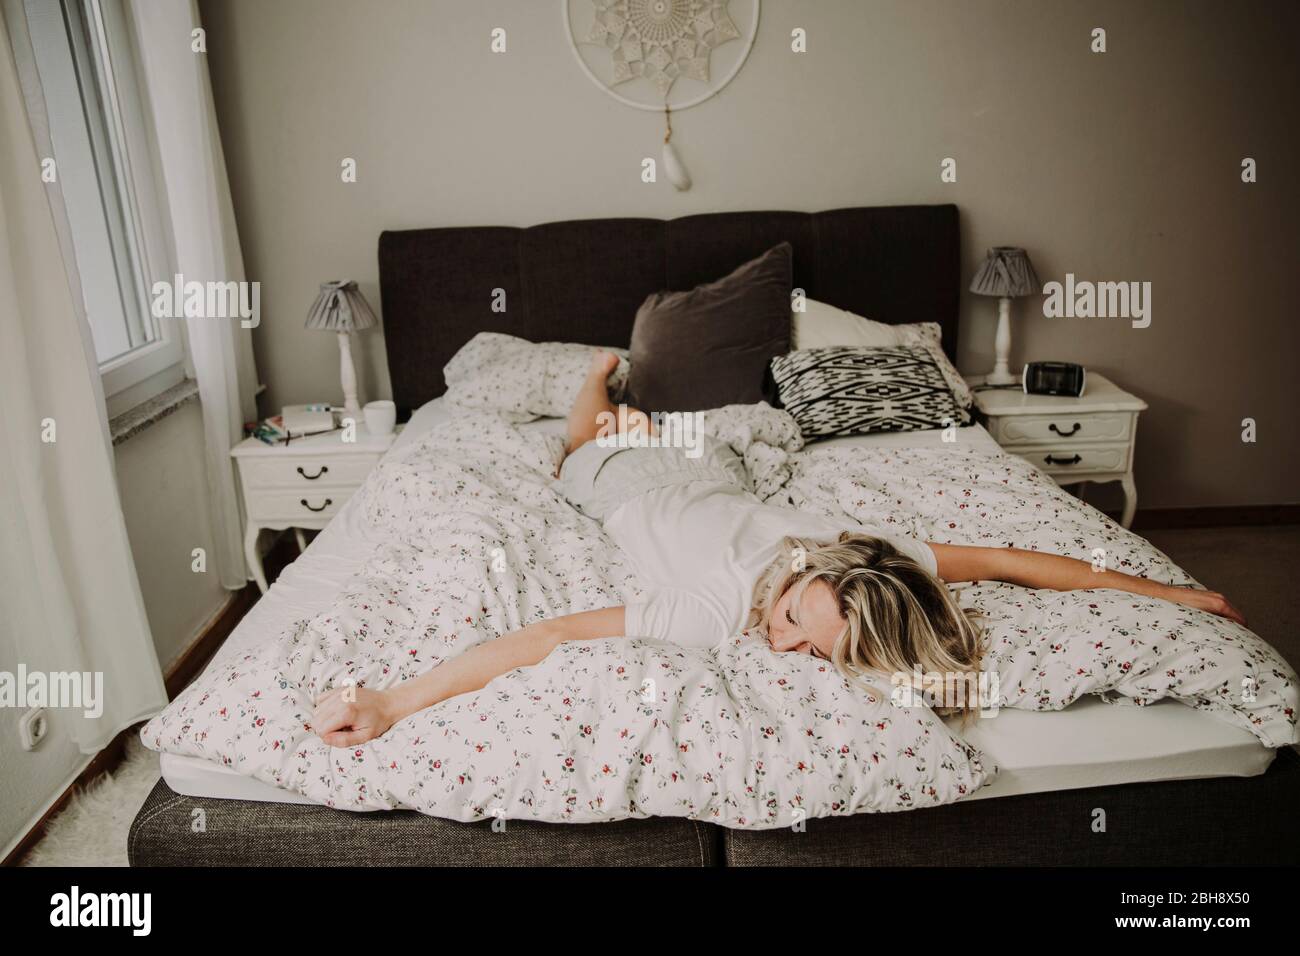 Frau liegt erschöpft im Bett Stock Photo